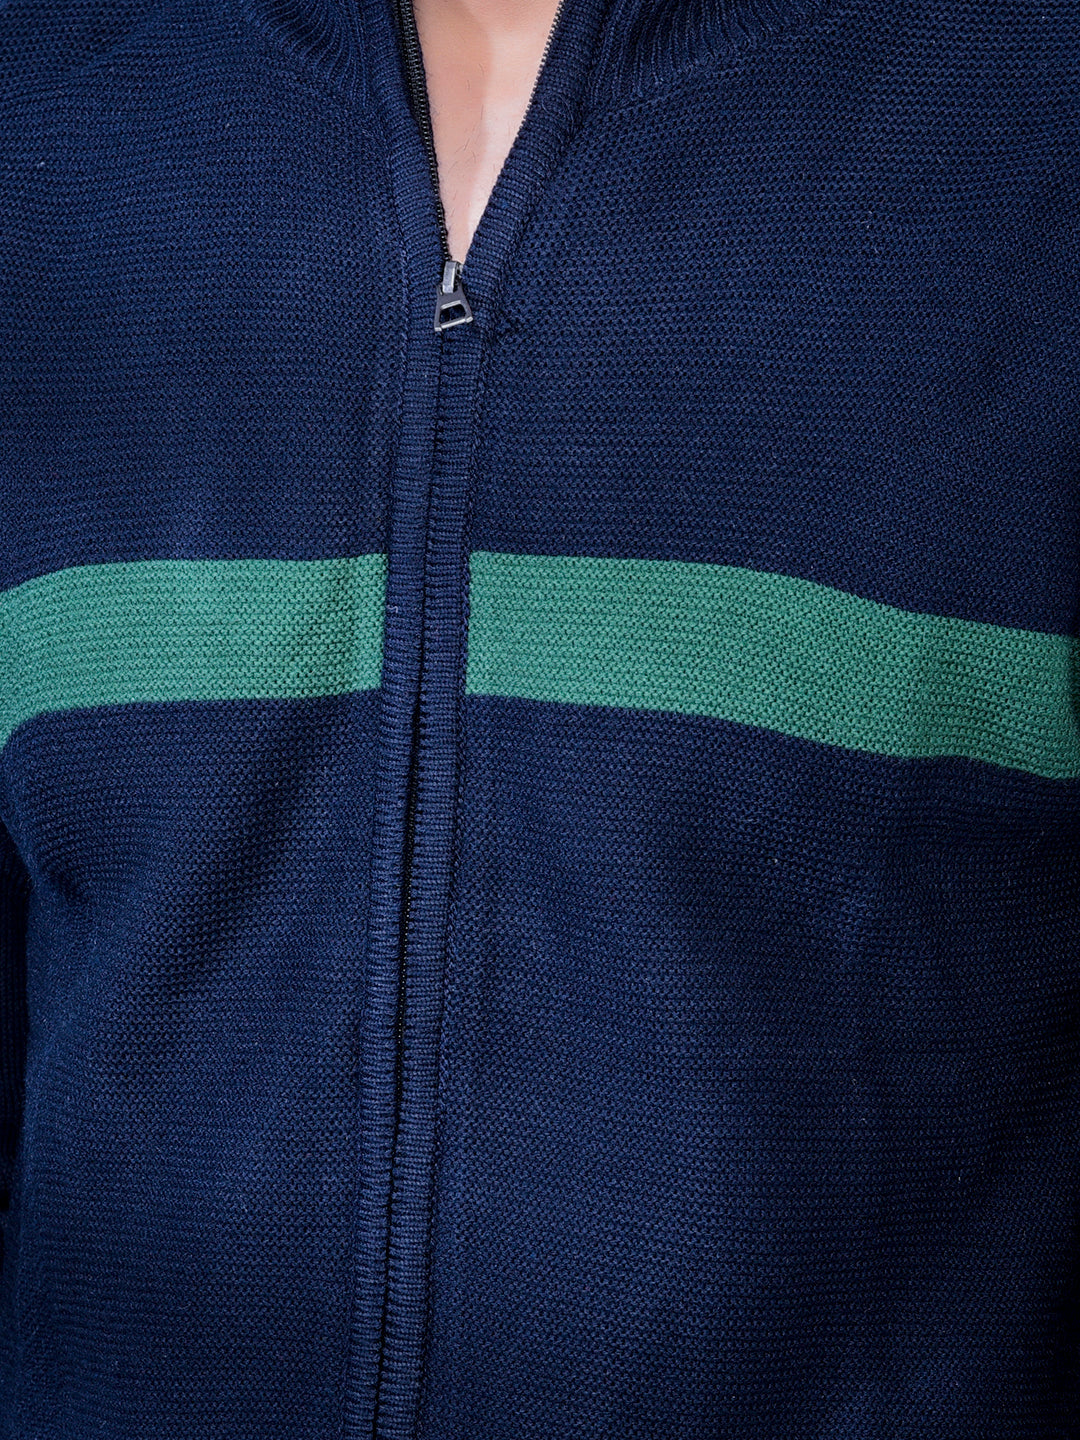 Cobb Navy Blue Solid Round Neck Sweater